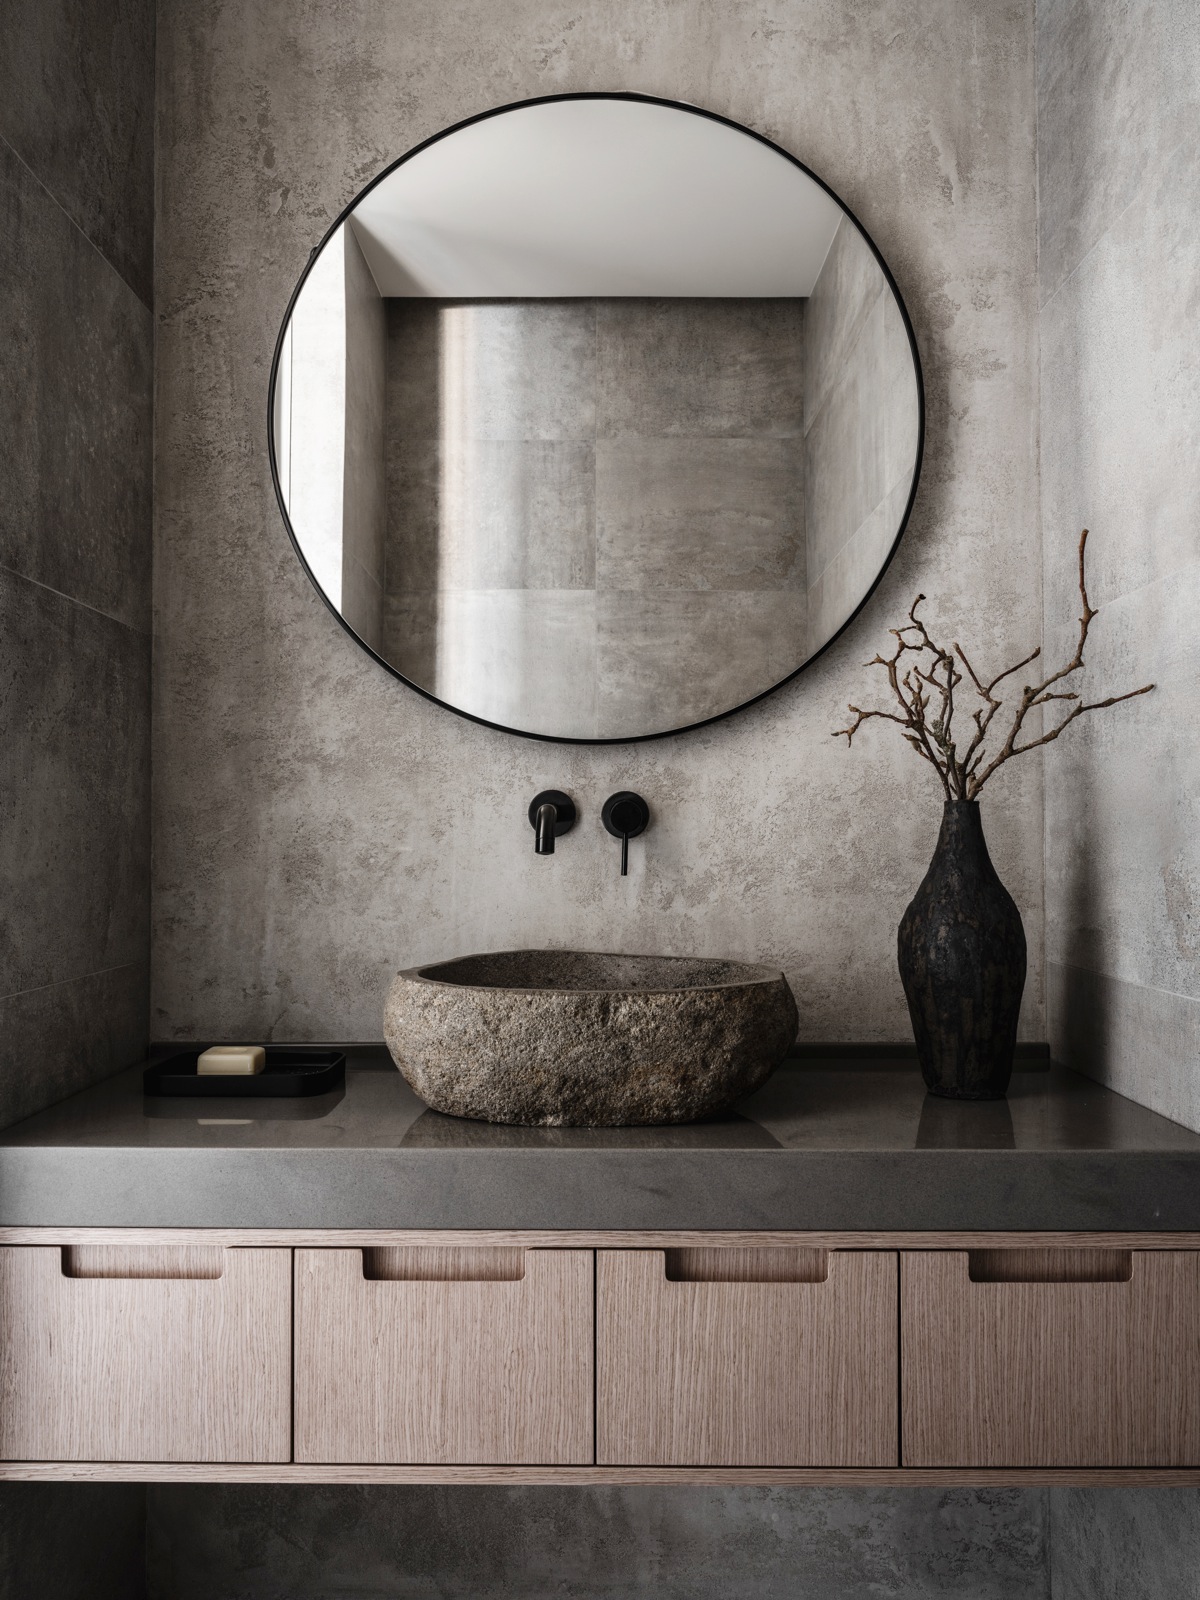 Một phòng tắm với gam màu xám lạnh nhưng vẫn khiến người nhìn mê đắm bởi nét đẹp chân thực của nội thất. Tủ lưu trữ gỗ, chậu rửa mặt đá tự nhiên kết hợp chiếc bình gốm vô cùng hài hòa và tinh tế.